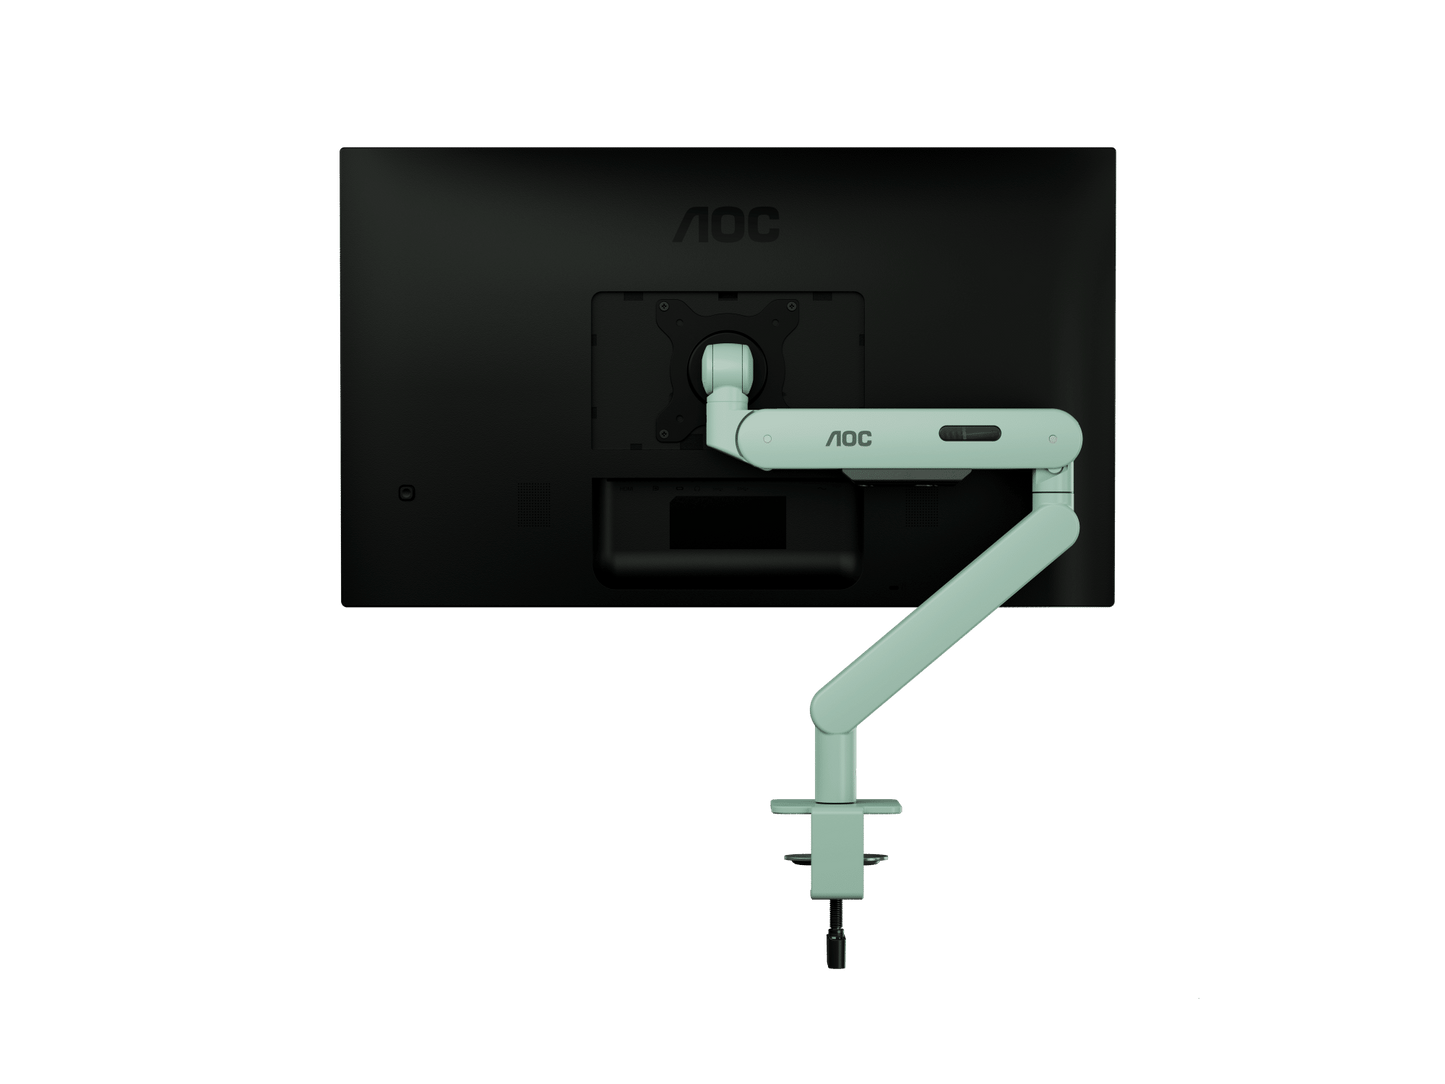 Giá đỡ màn hình đơn AOC AM400C - Xanh lá